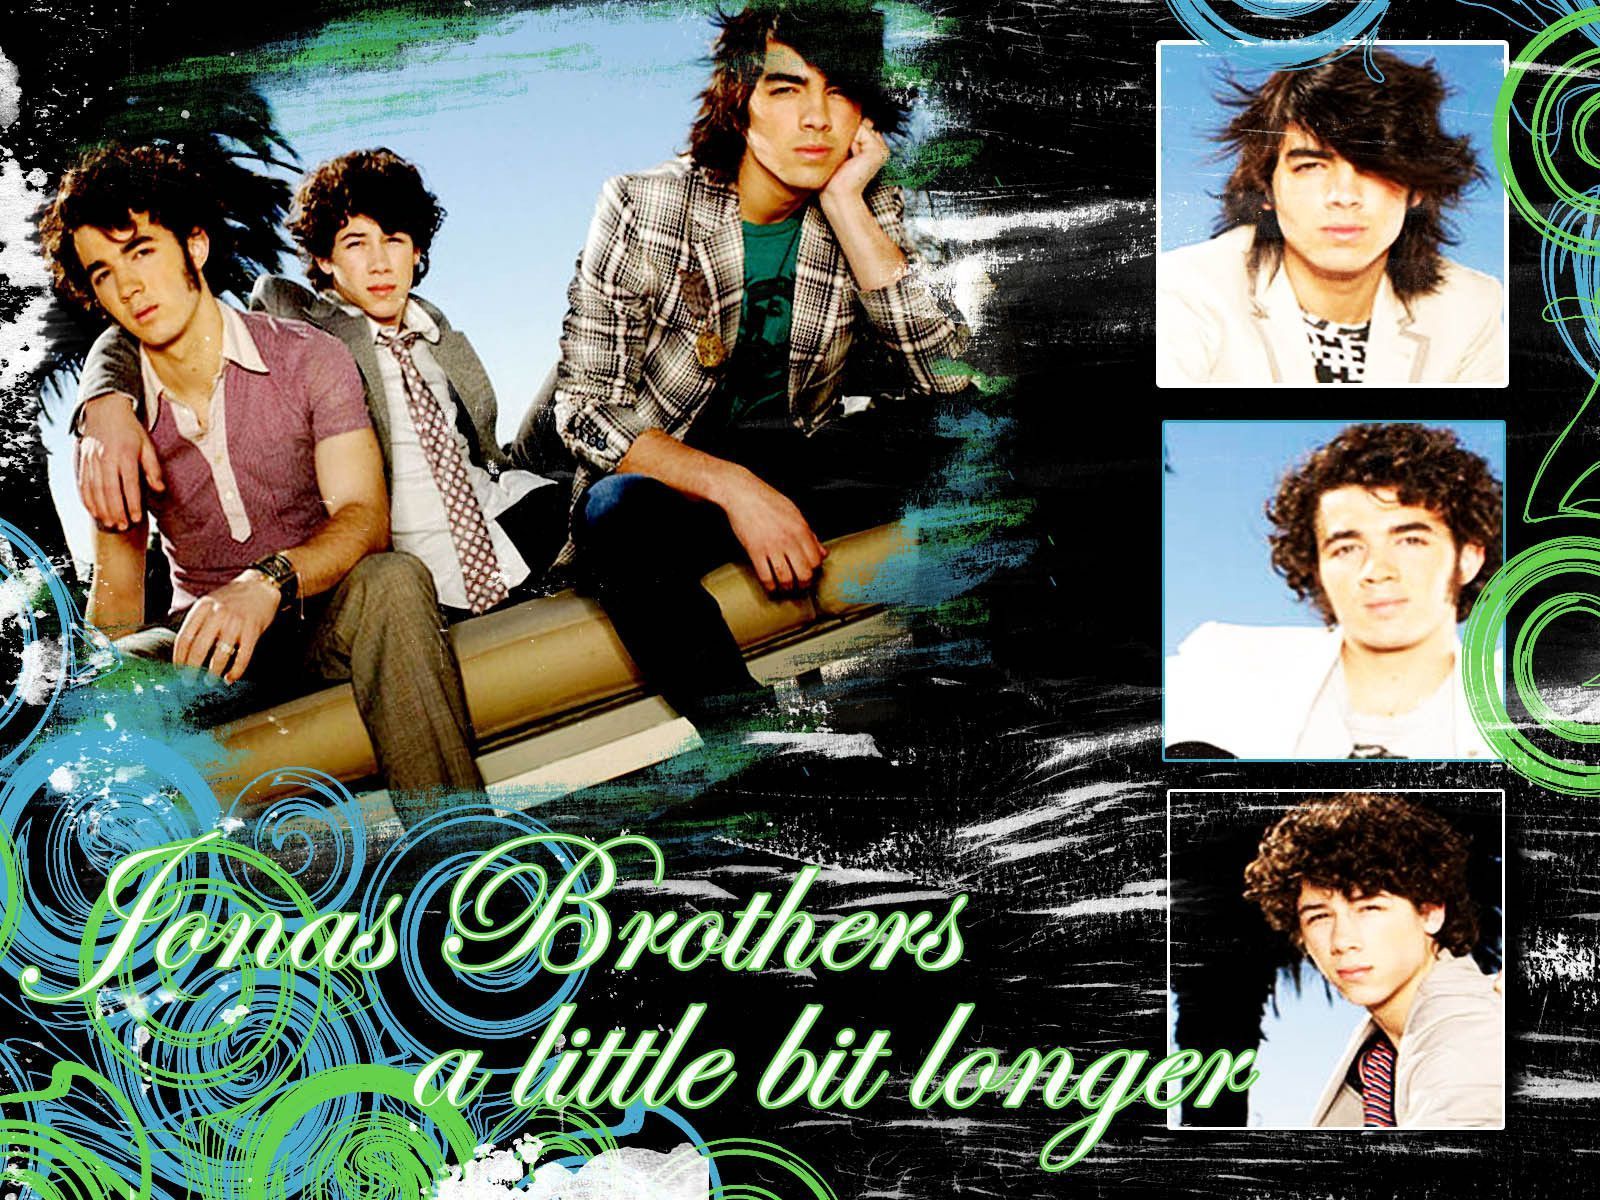 JB love - The Jonas Brothers Wallpaper (2033108) - Fanpop